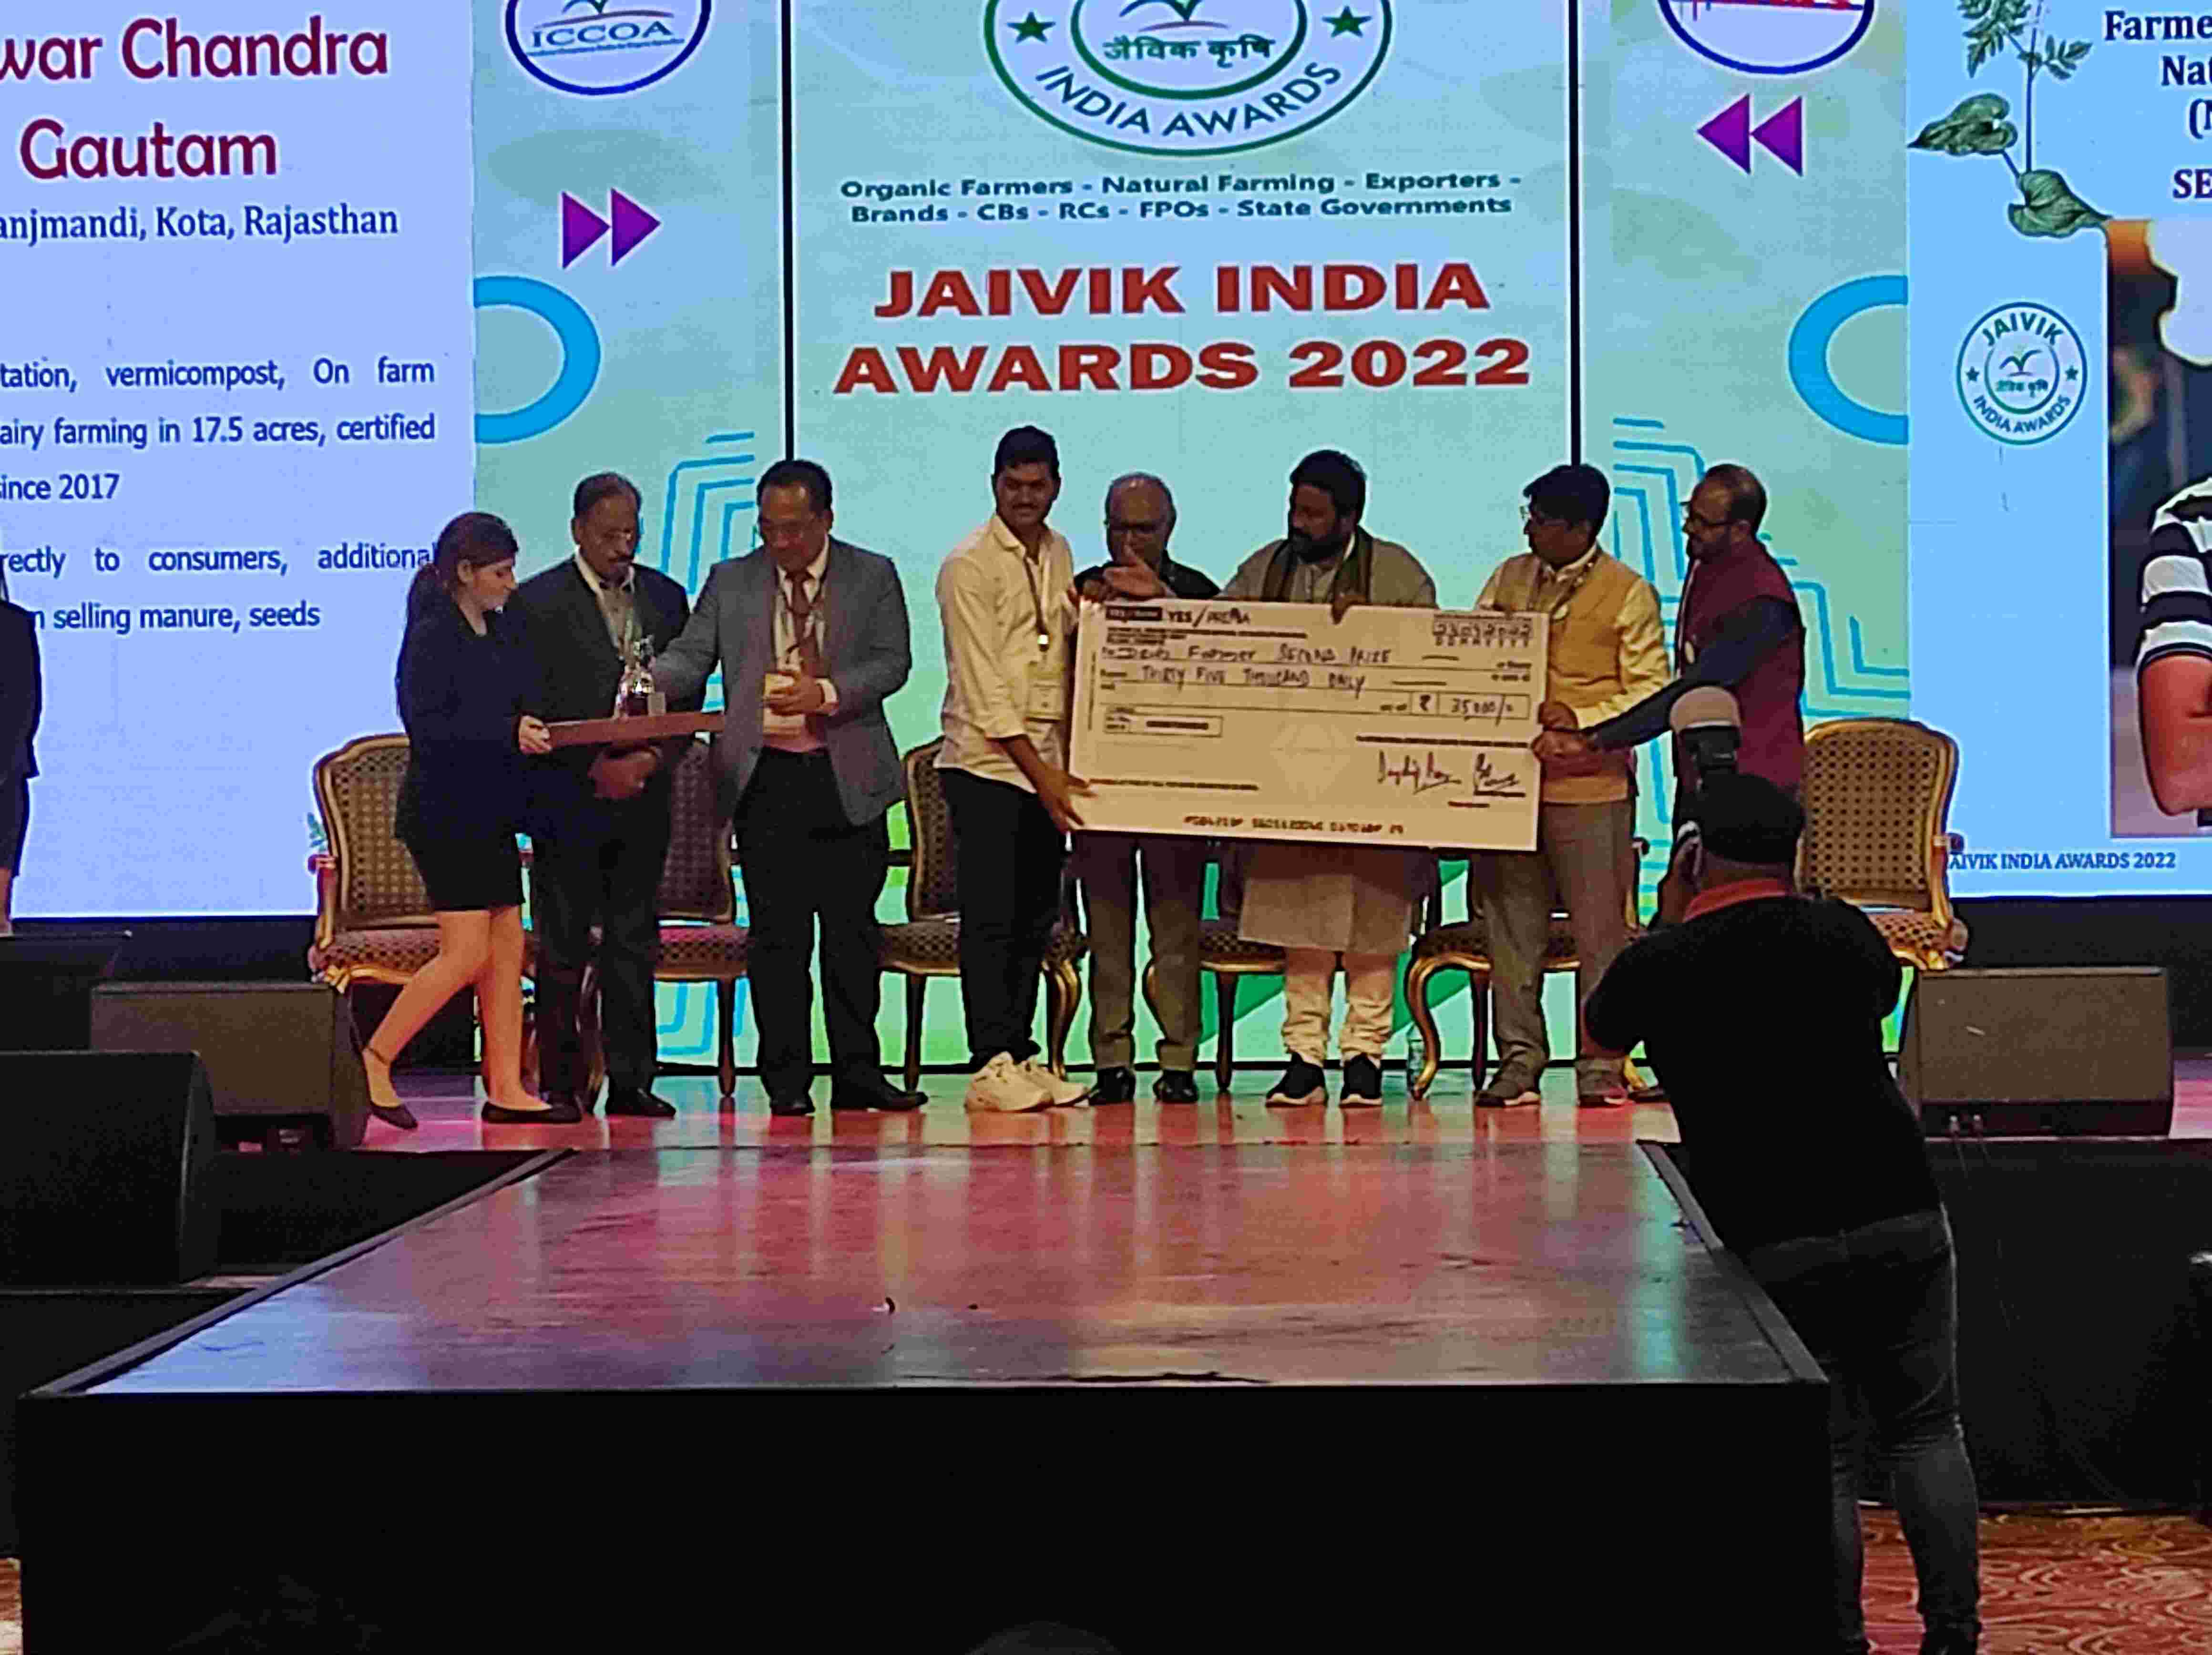 उत्कृष्ट प्रदर्शन के लिए किसानों व संस्थाओं को जैविक इंडिया अवार्ड्स से किया गया सम्मानित